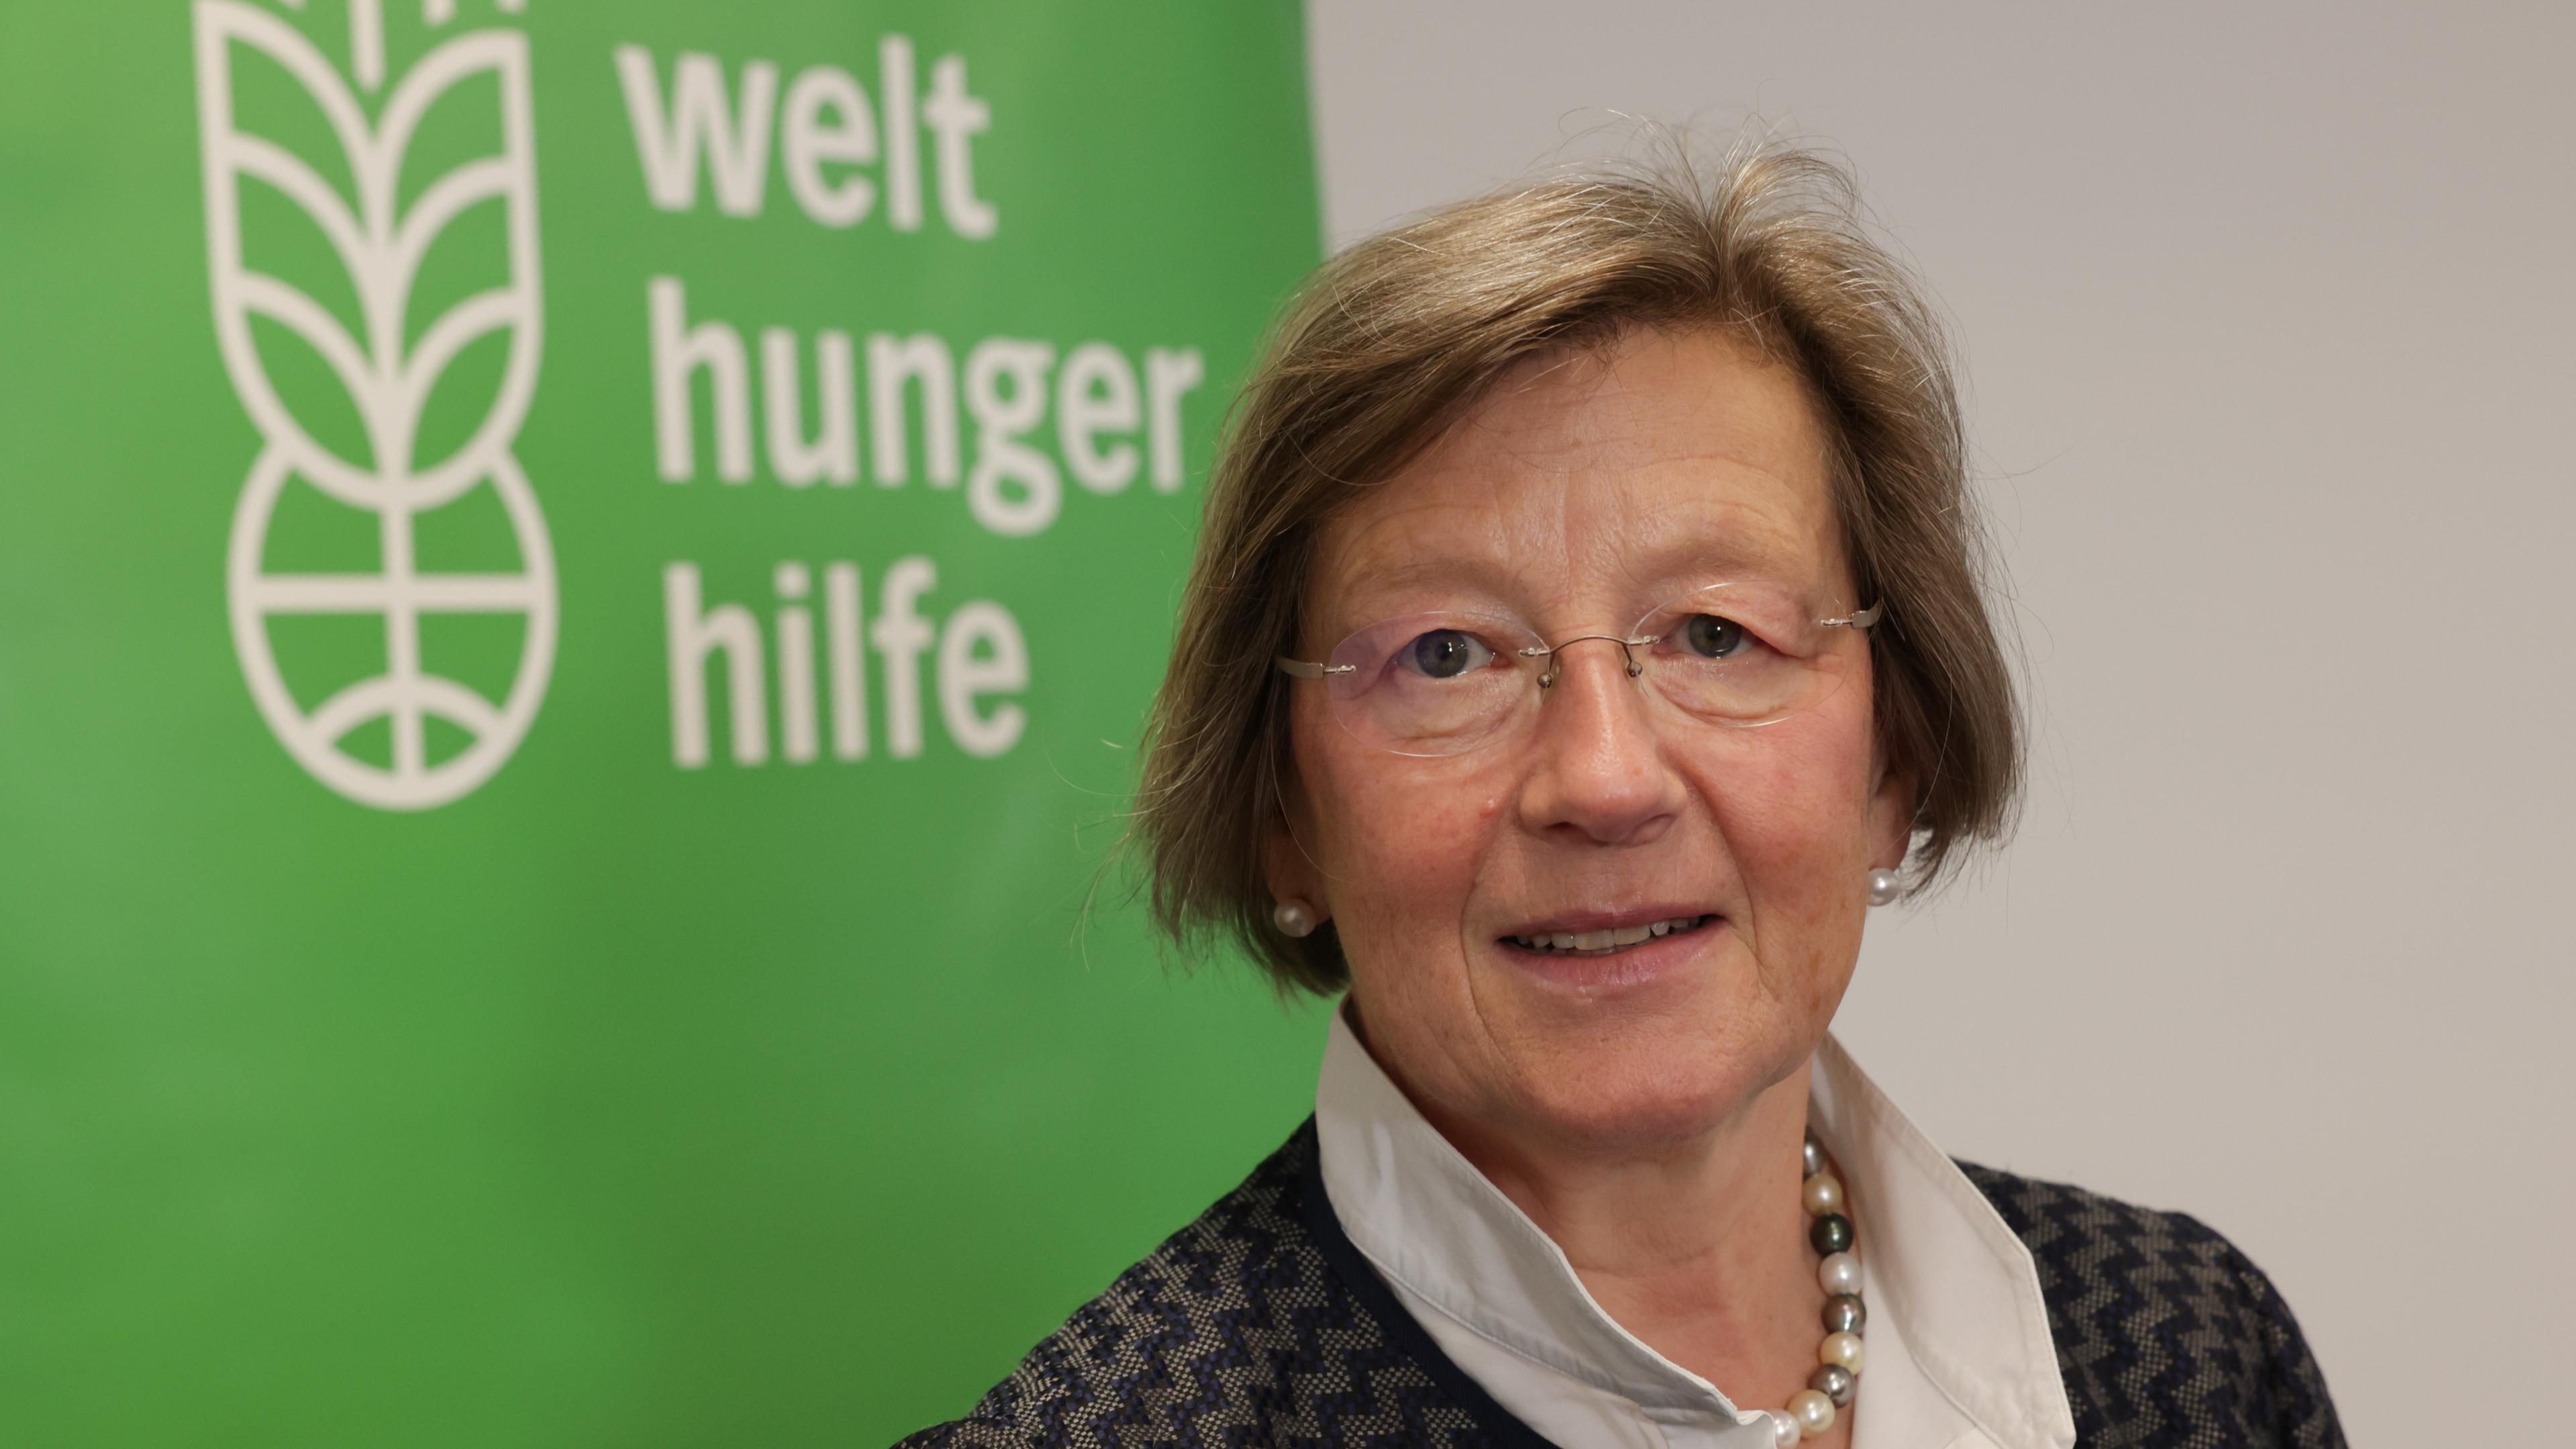 Marlehn Thieme, Präsidentin der Welthungerhilfe vor einem Schild mit Logo und Aufschrift "Welthungerhilfe".